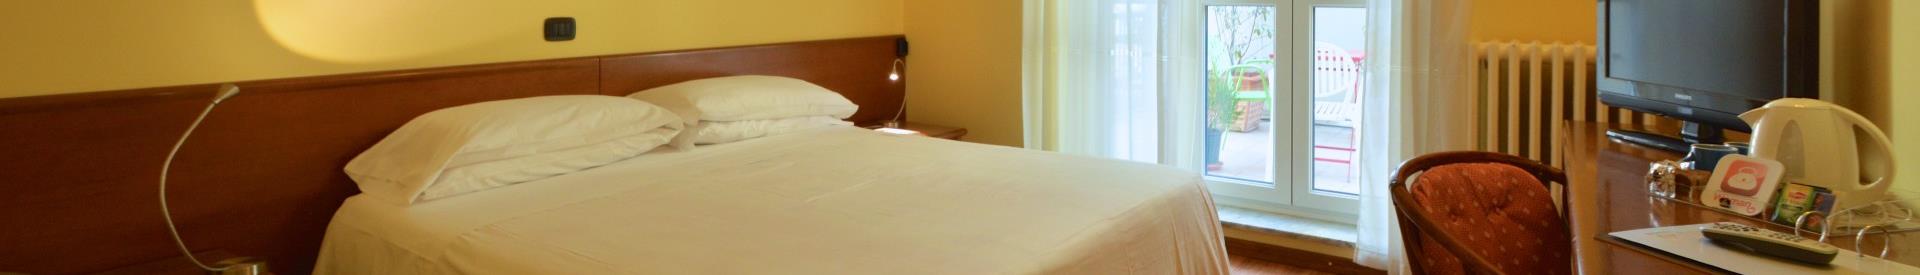 Reserve já seu quarto no melhor hotel 3 estrelas em Turim